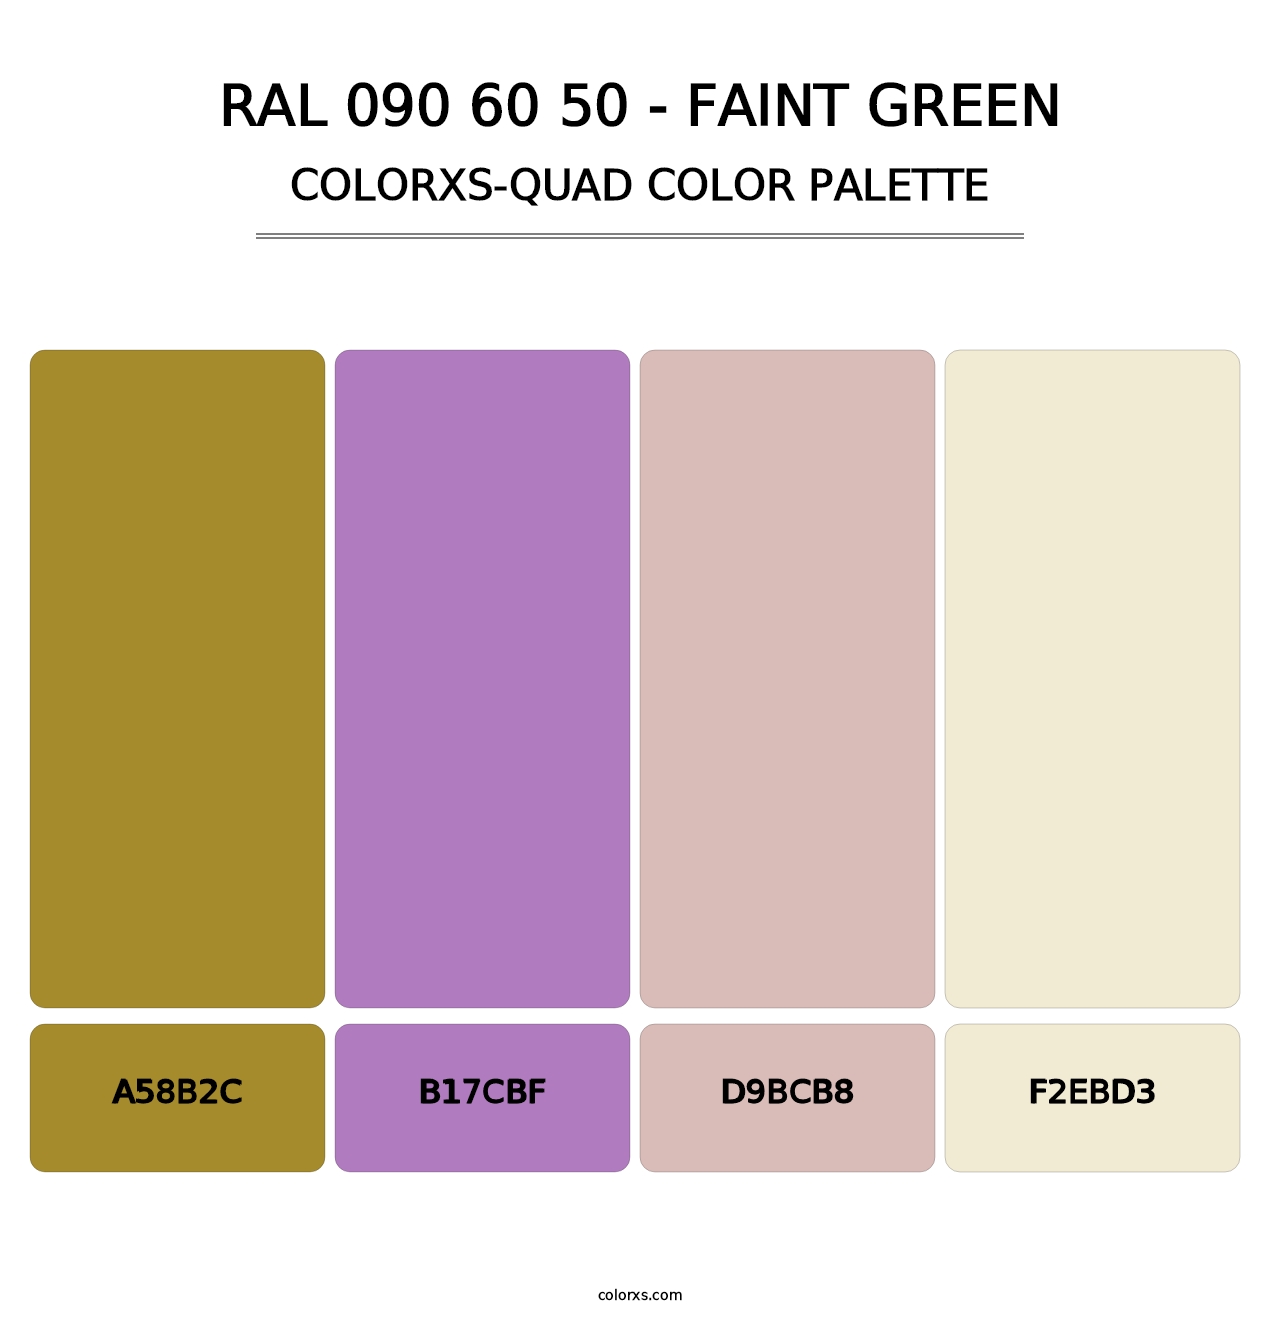 RAL 090 60 50 - Faint Green - Colorxs Quad Palette